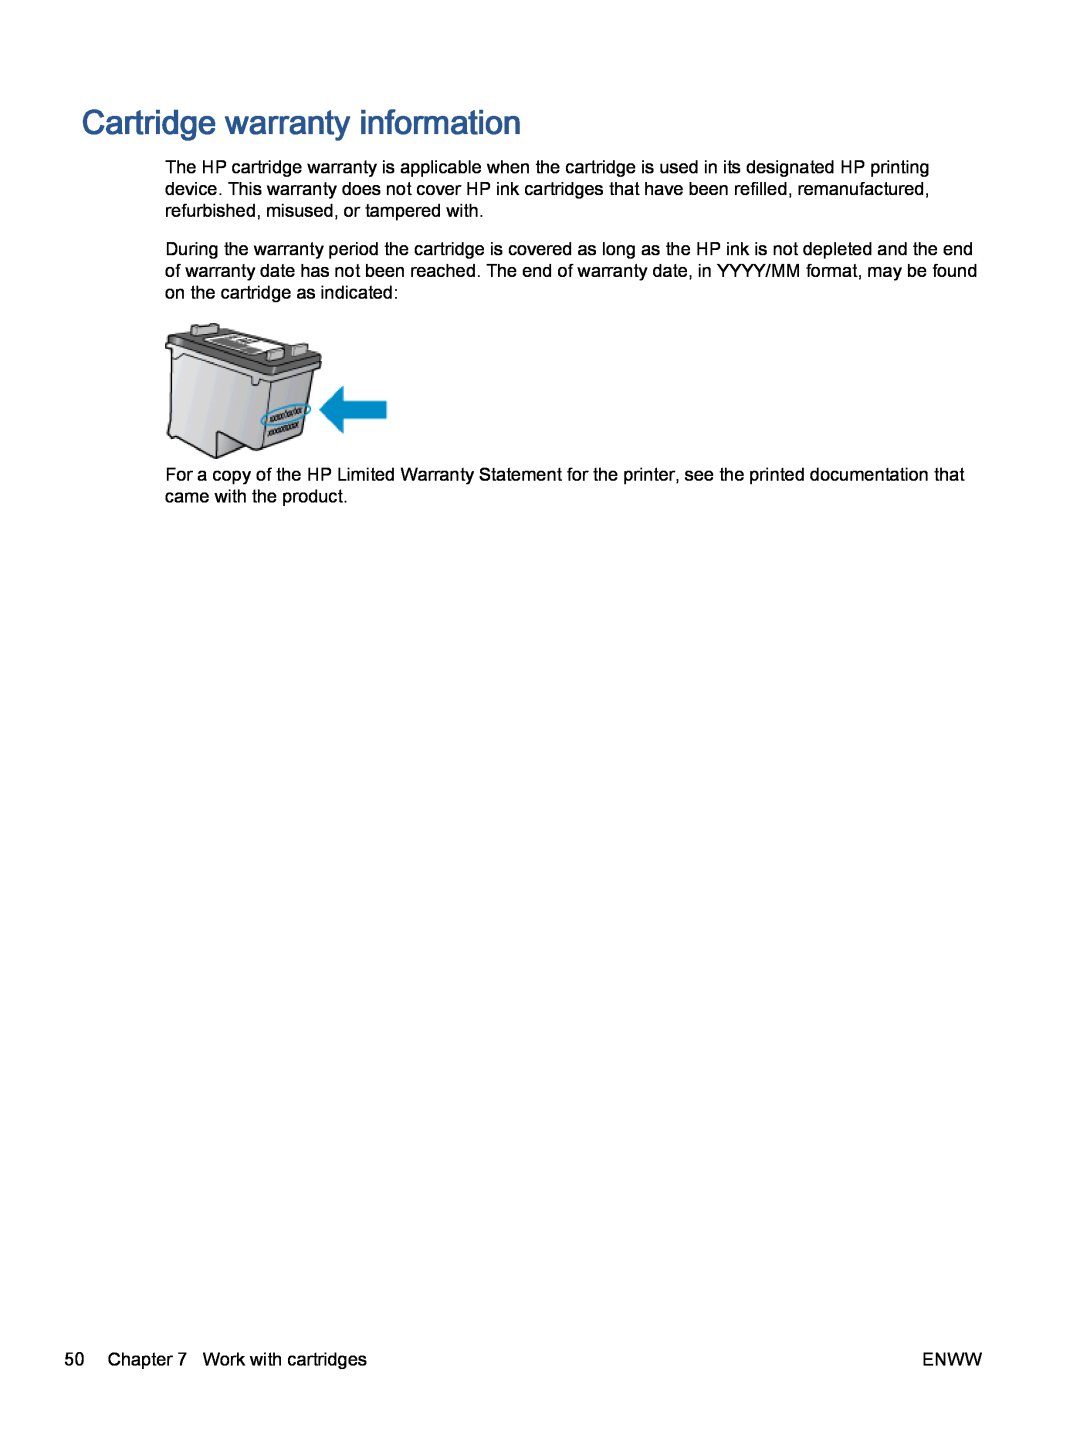 HP 5535 A9J44A1H3, 5530 A9J40A#B1H manual Cartridge warranty information 